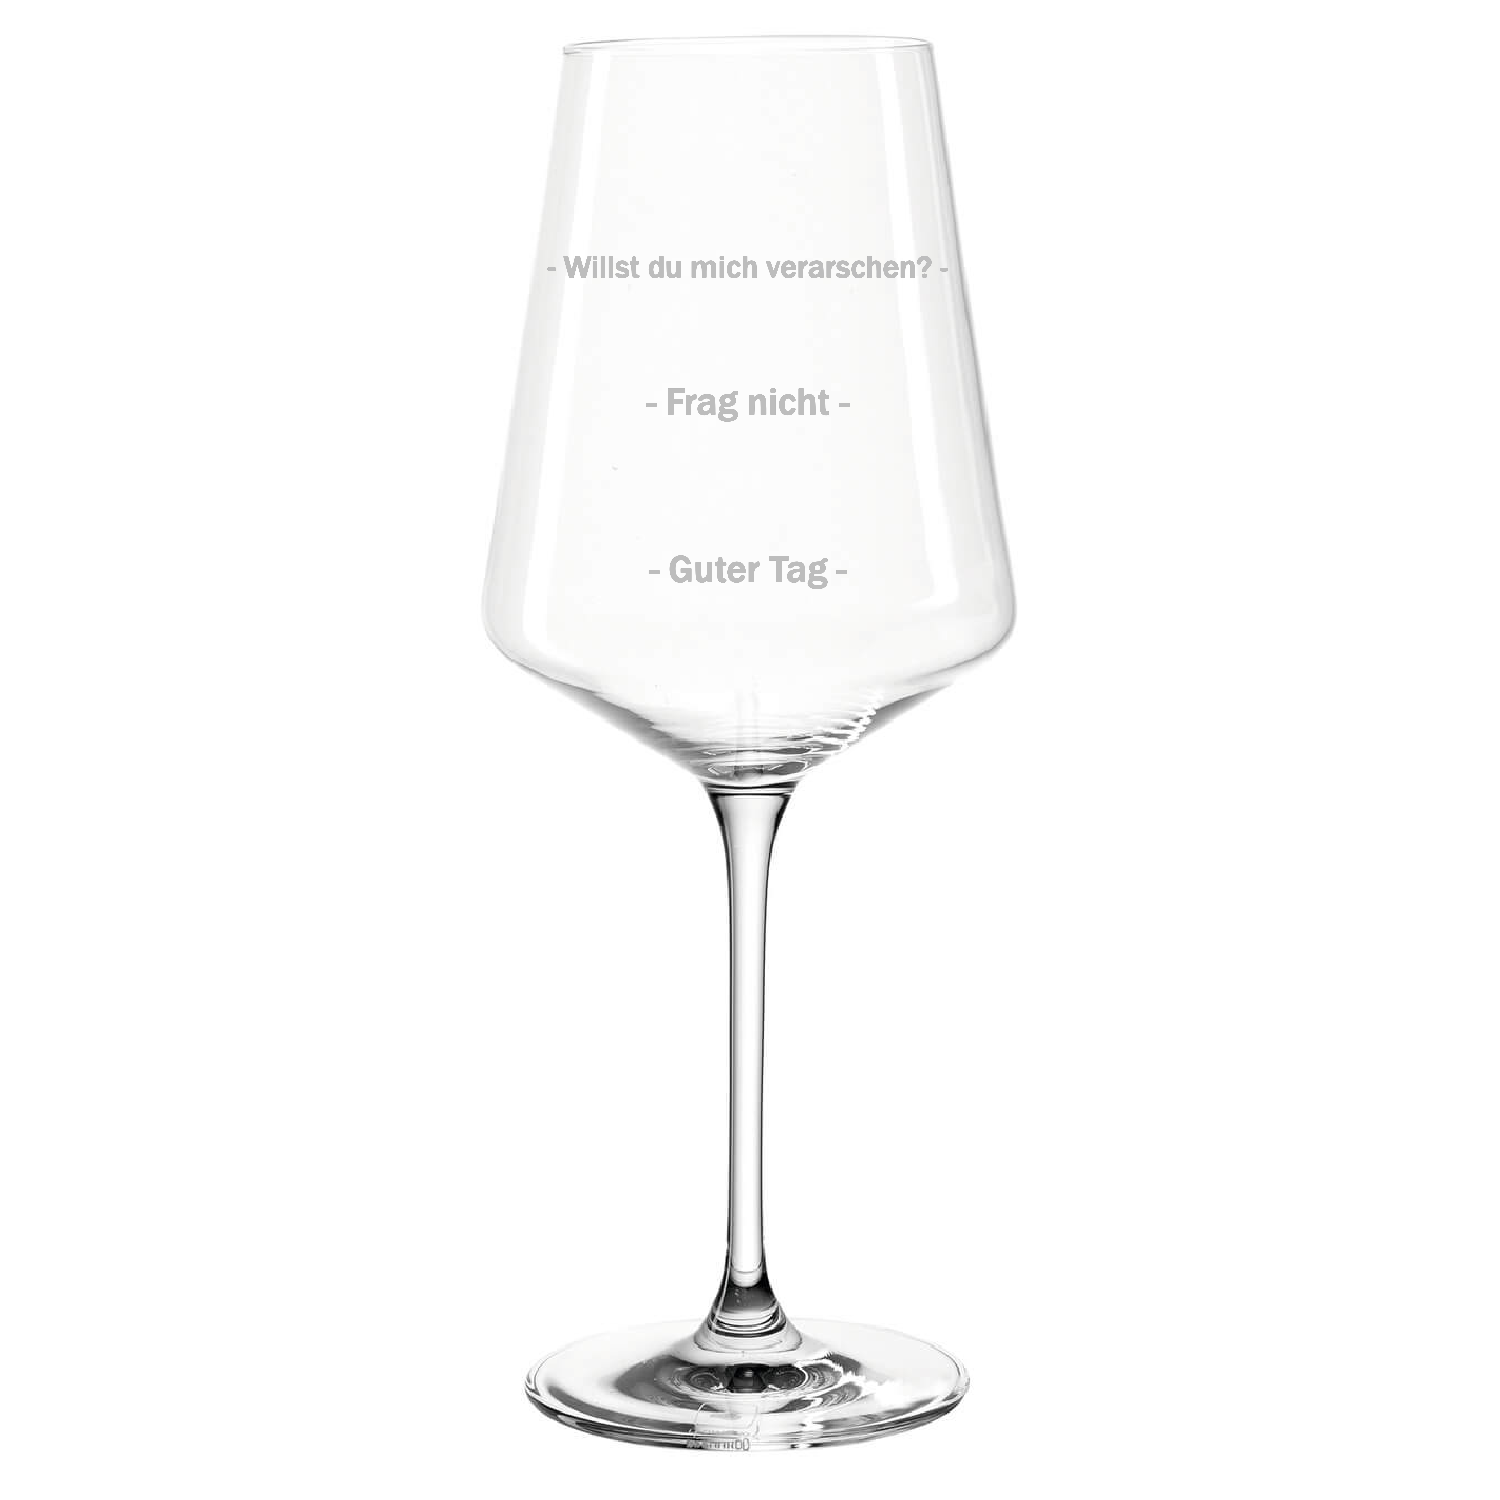 FRAG NICHT - Premium Weinglas